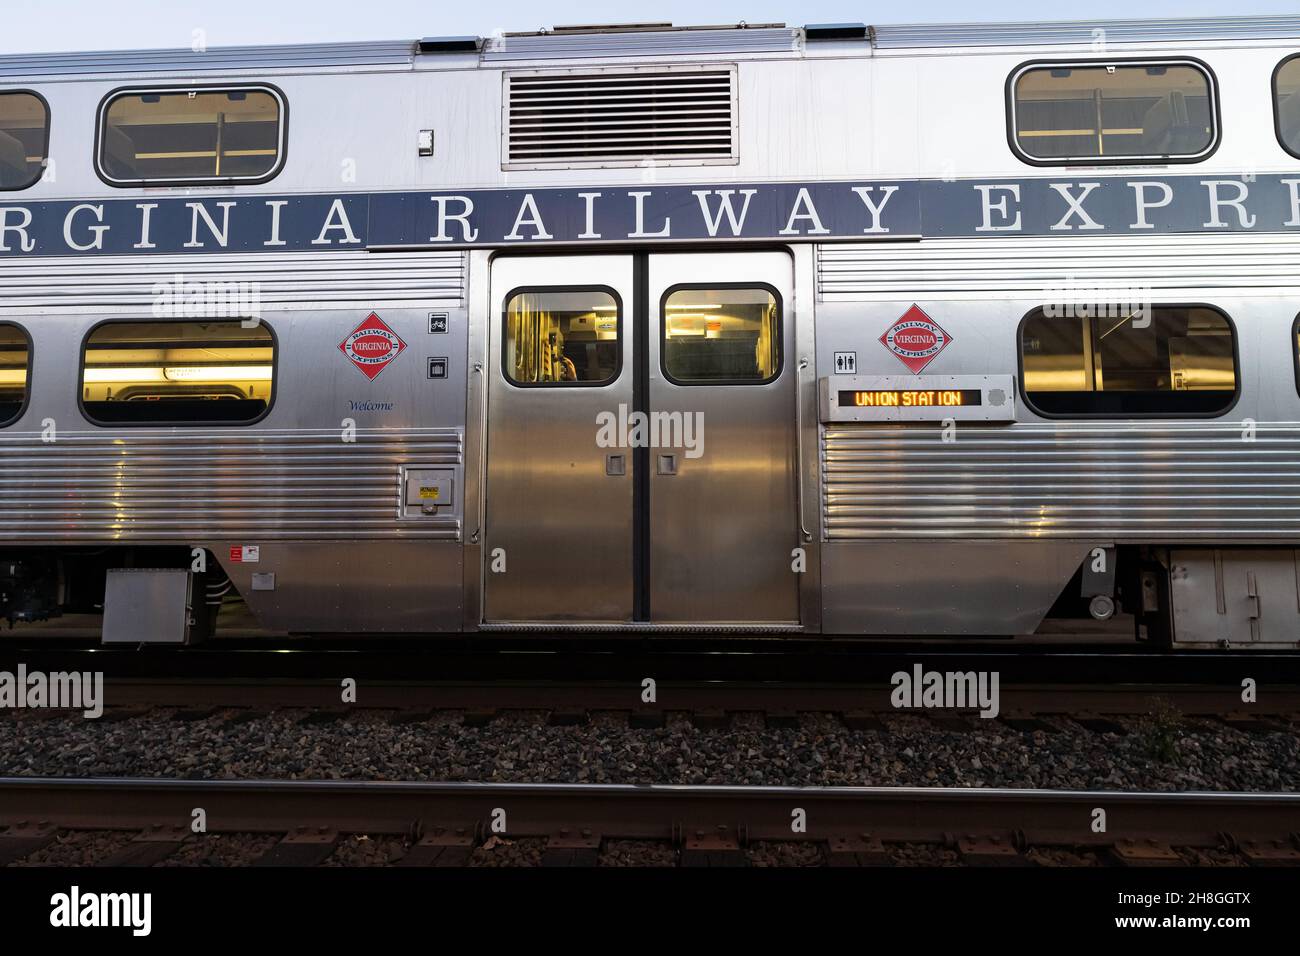 ALEXANDRIA va, ÉTATS-UNIS - 29 octobre 2021 : un train Virginia Railway Express s'est arrêté à une gare. Banque D'Images